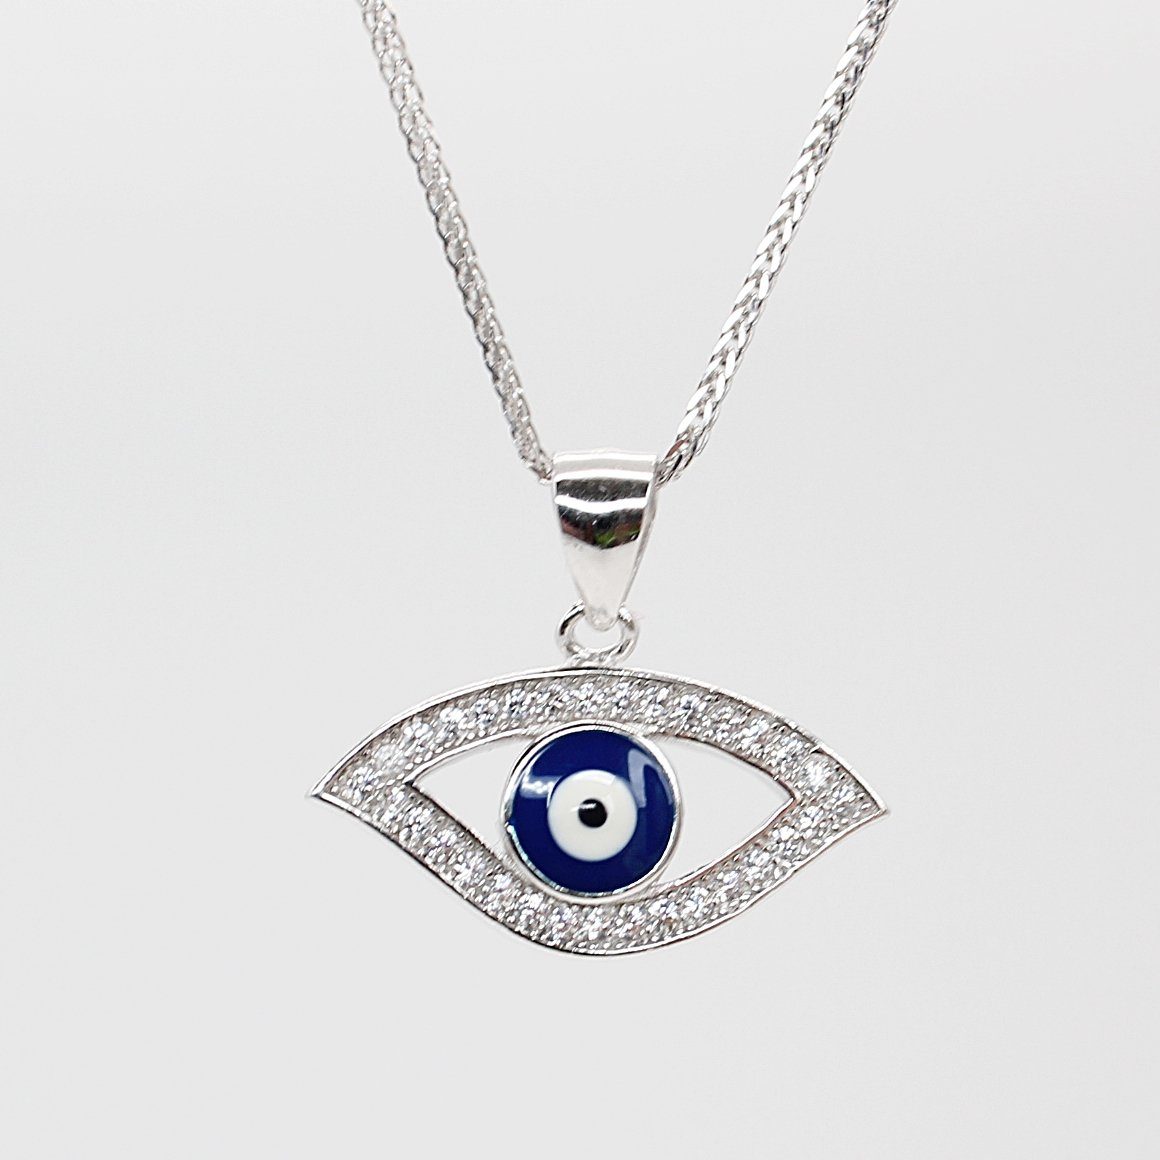 ELLAWIL Silberkette Kette mit Blue Eye Anhänger Damen Zirkonia Halskette Mädchen türkis (Kettenlänge 45 cm, Sterling Silber 925), inklusive Geschenkschachtel